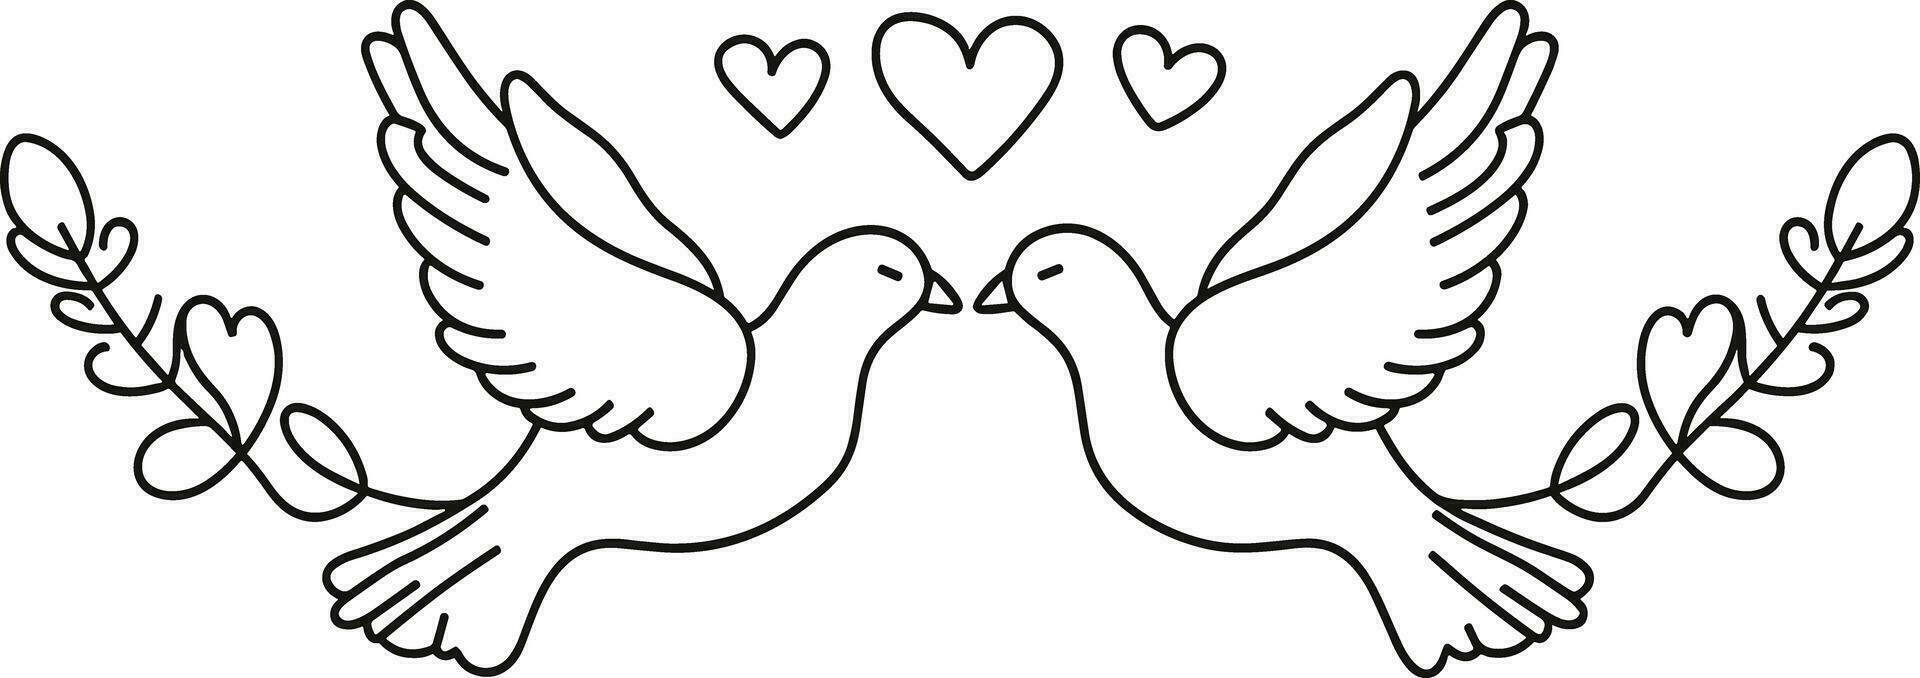 casal pomba do amor, vetor do pomba linha arte ilustração , dia dos namorados dia conceito, romântico símbolo, amor tema, decorativo, romântico pássaros, dia dos namorados decoração, casal pássaros